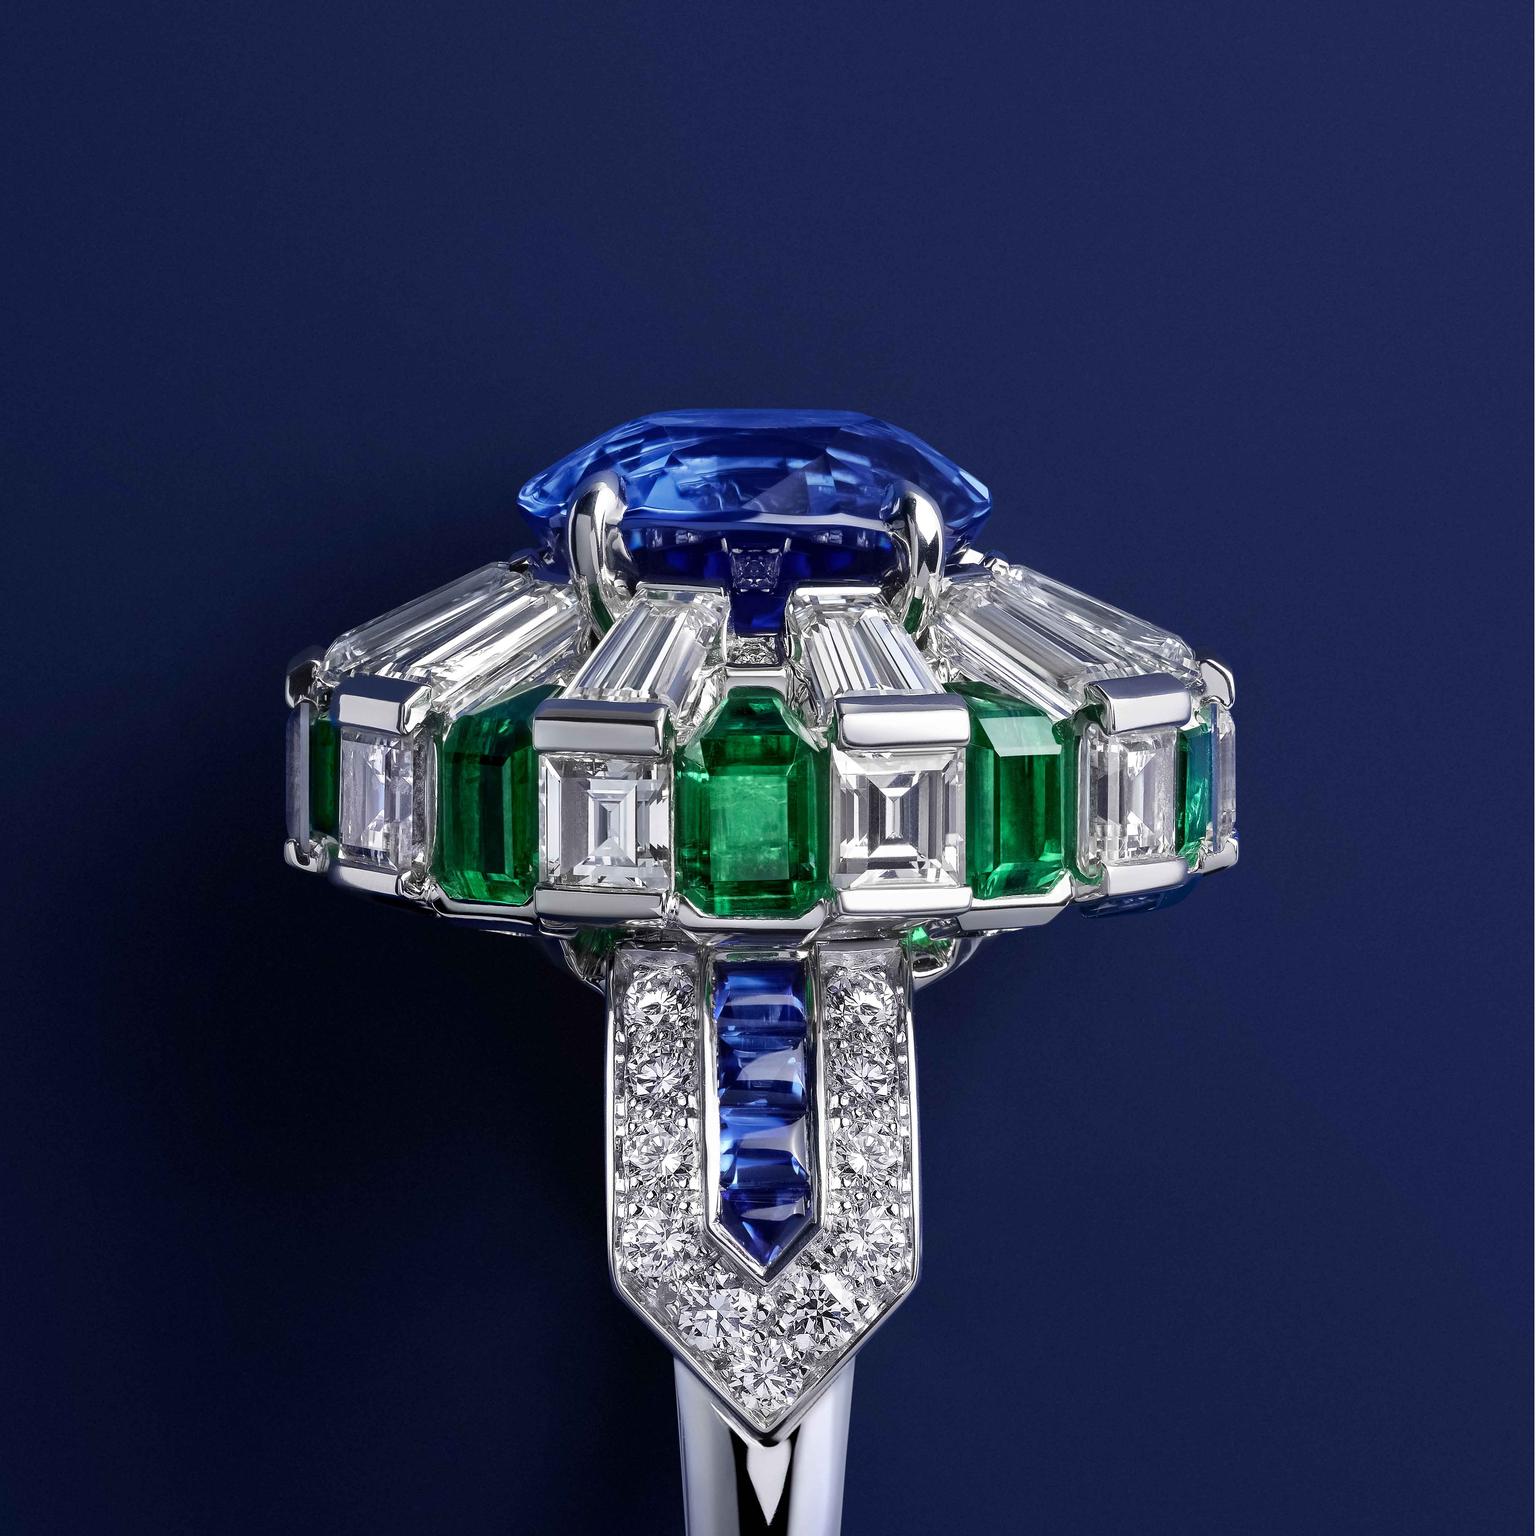 Heteractis ring by Cartier